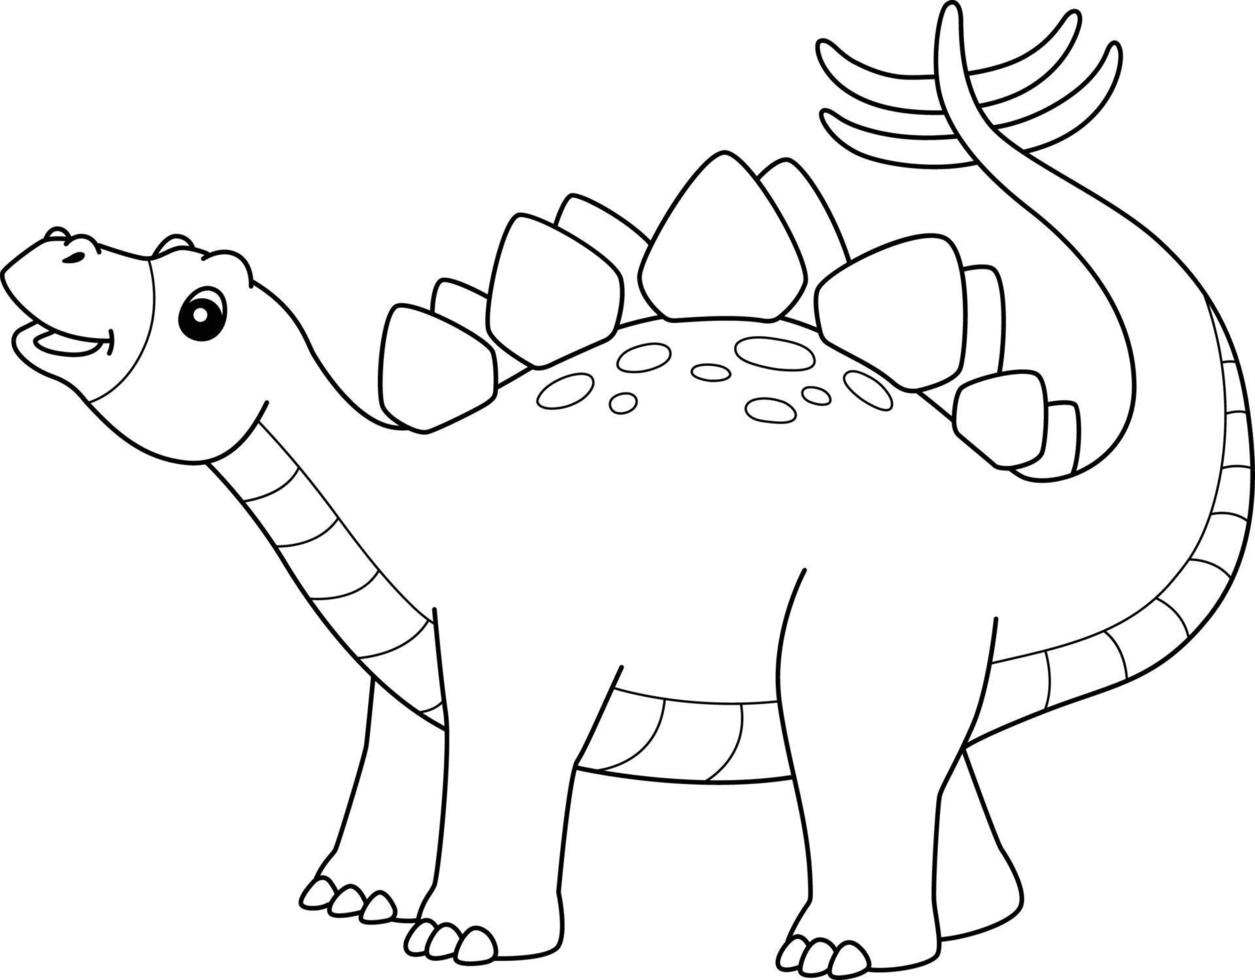 Stegosaurus-Färbung isolierte Seite für Kinder vektor